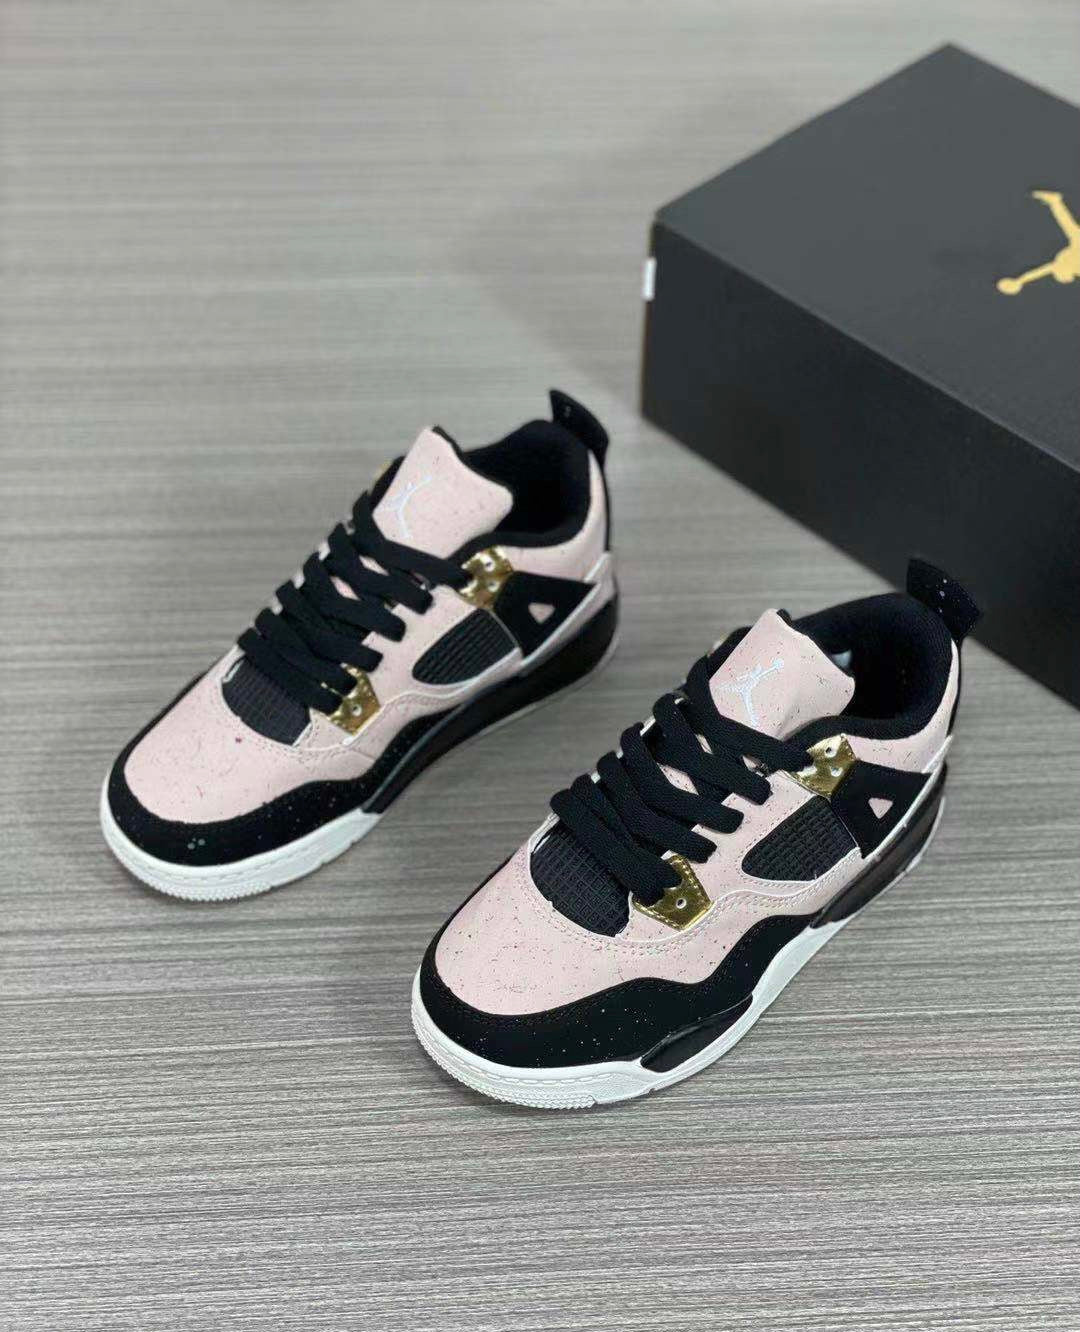 Nike air jordan 4 splatter shoes